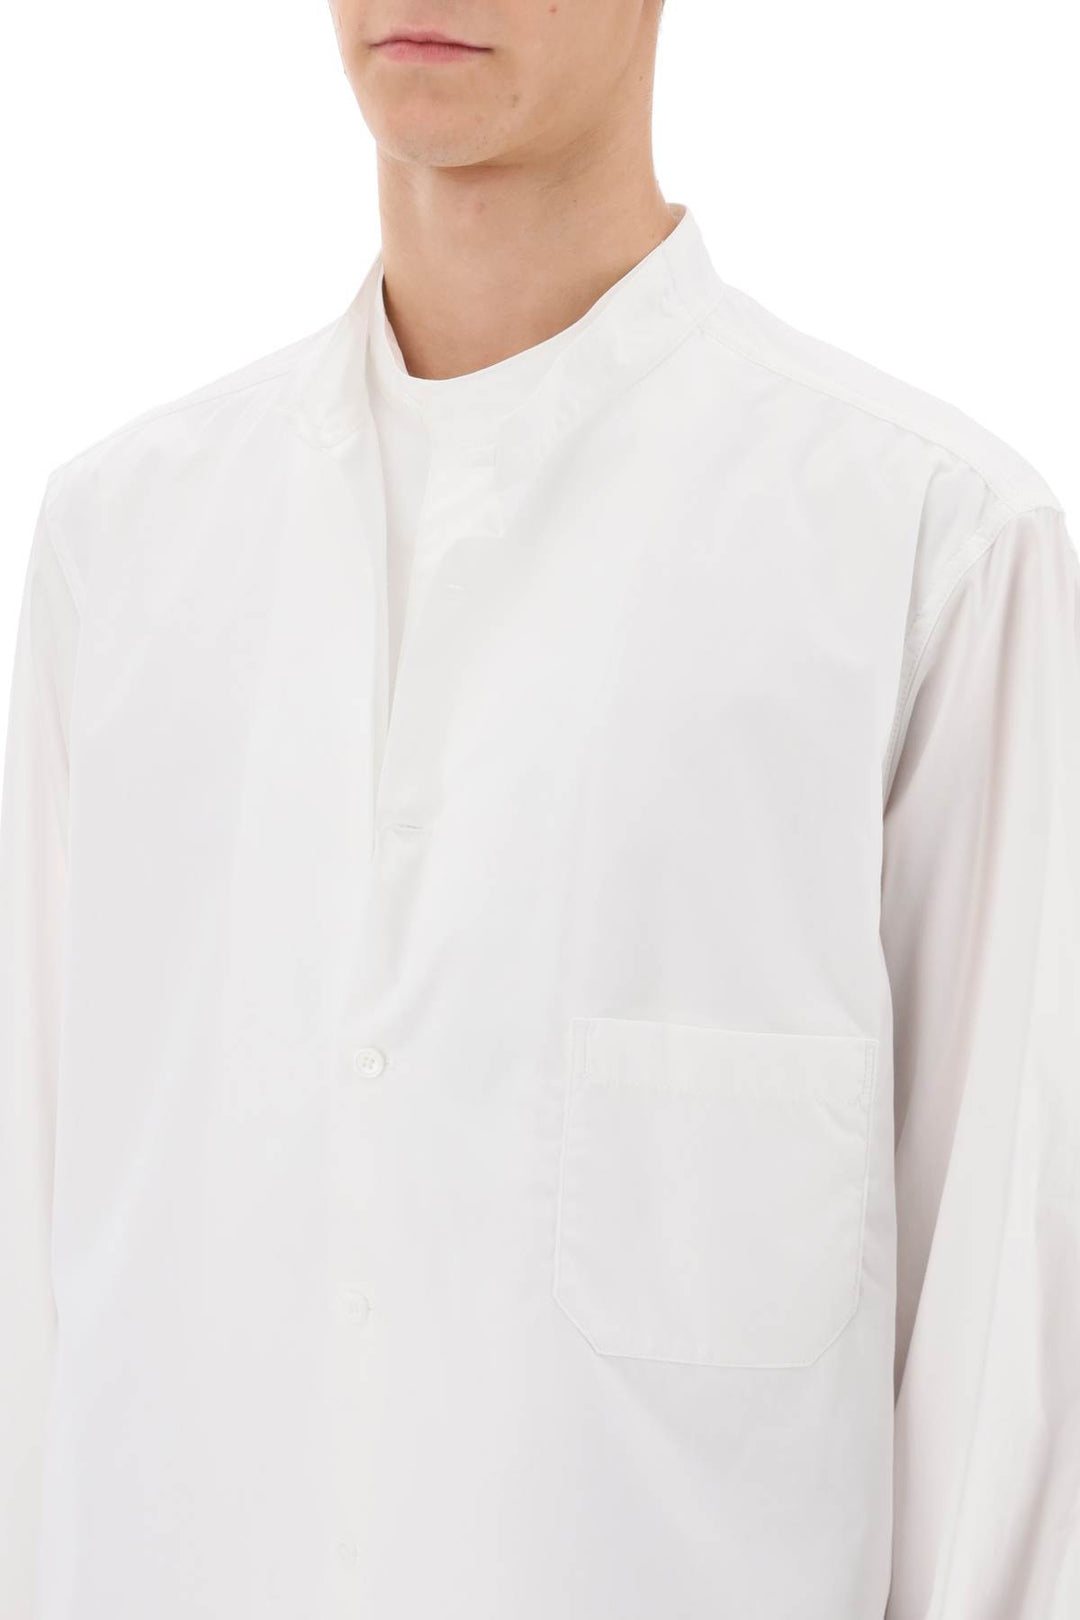 Yohji yamamoto layered longline shirt-3